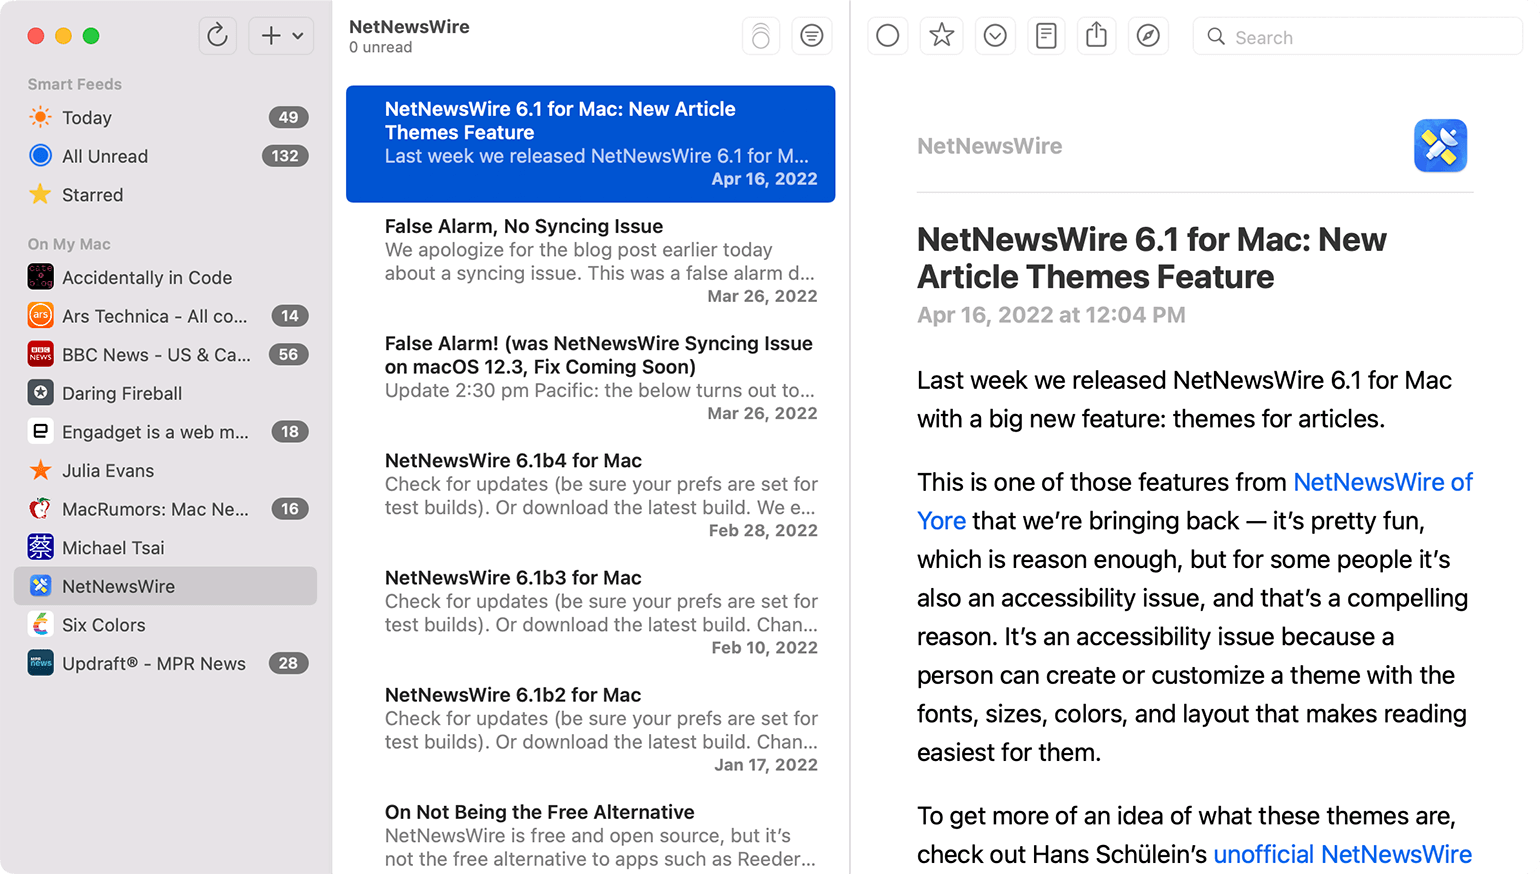 NetNewsWire is a popular RSS feed reader application